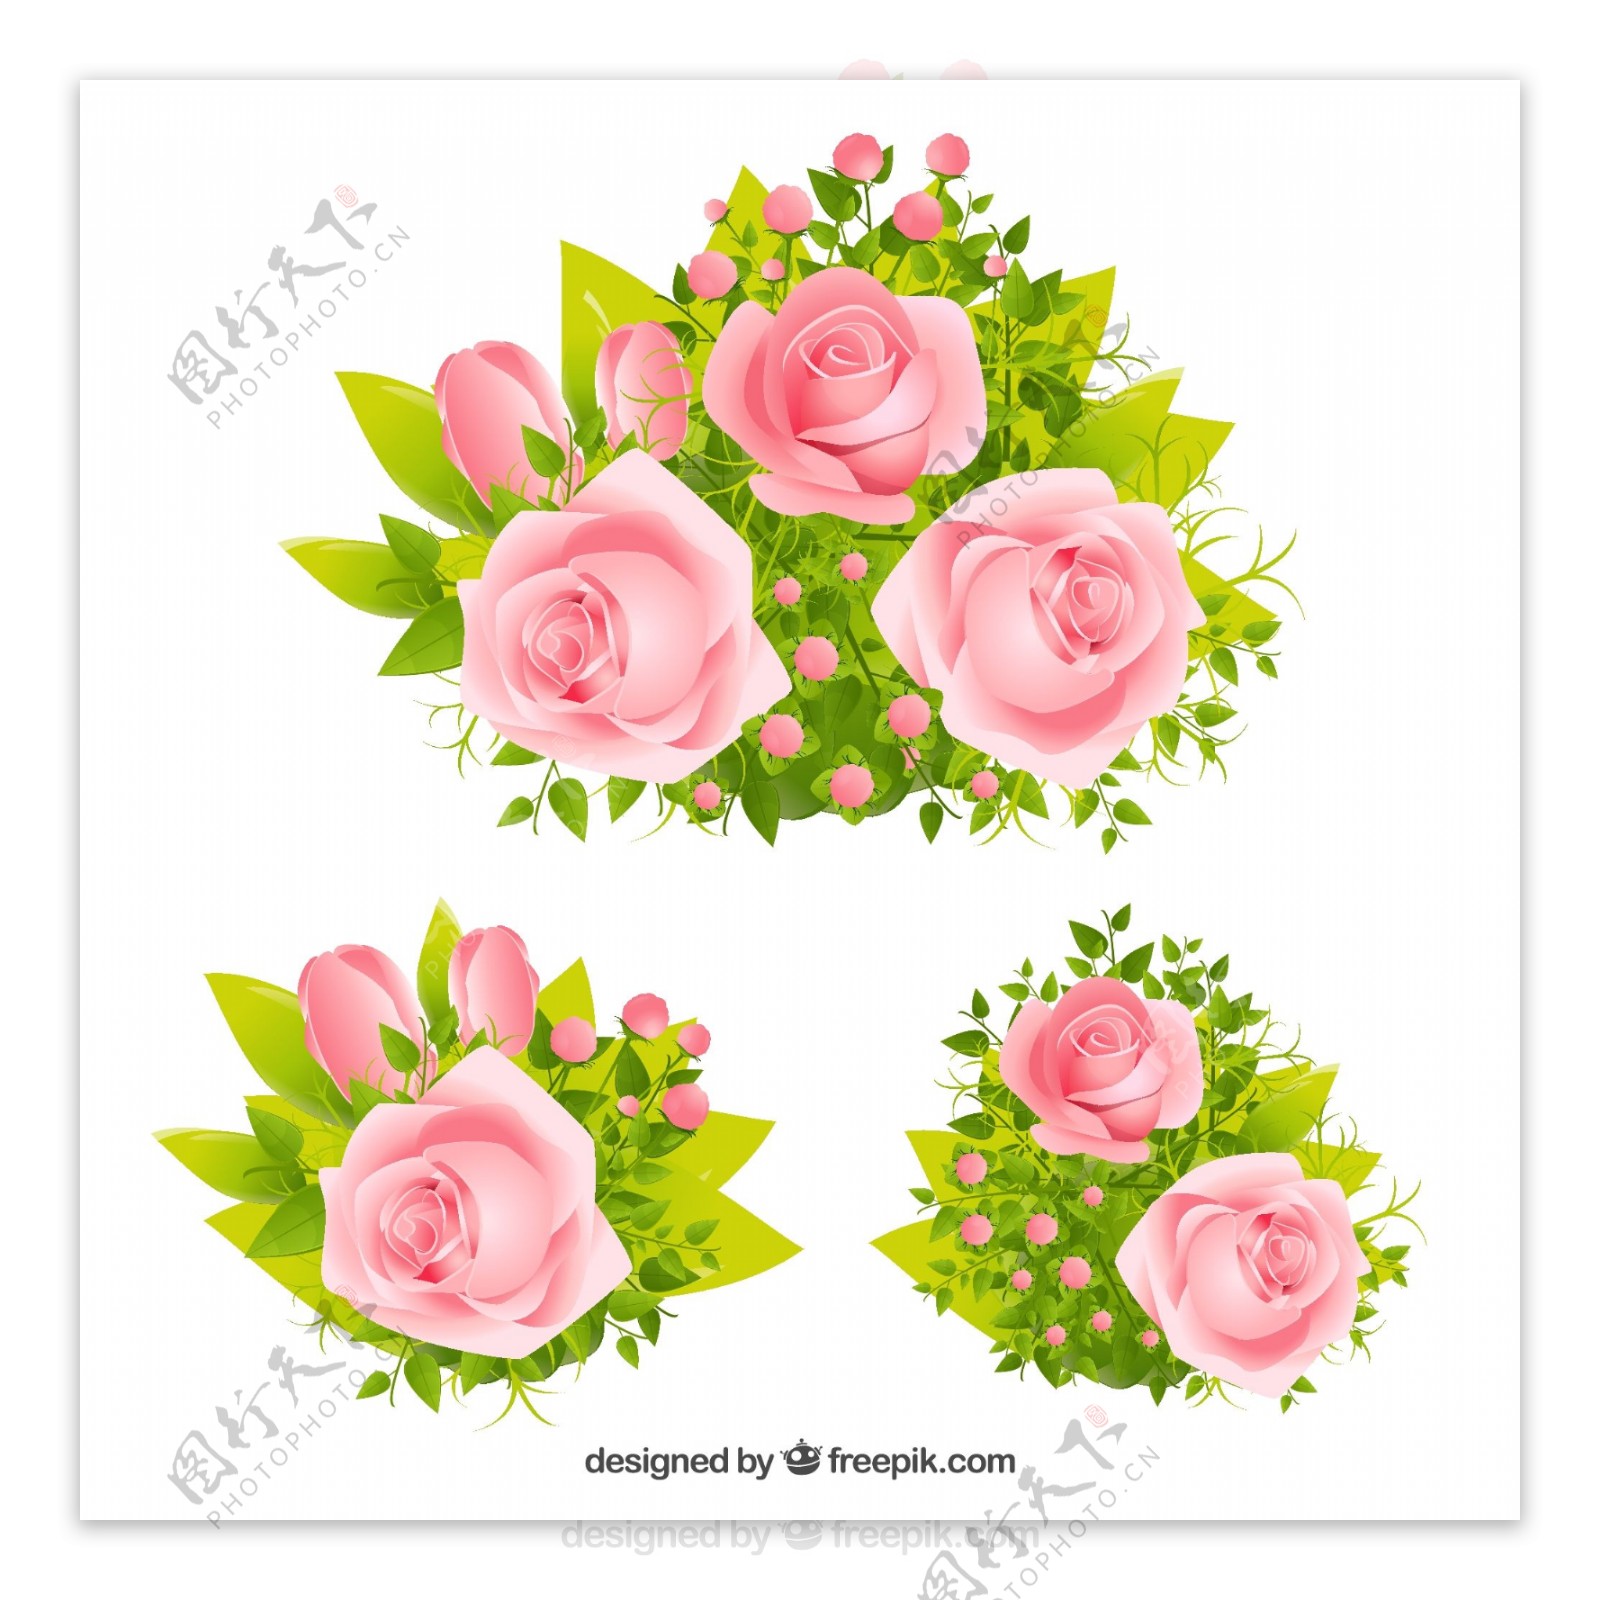 3组精美粉色玫瑰花矢量素材